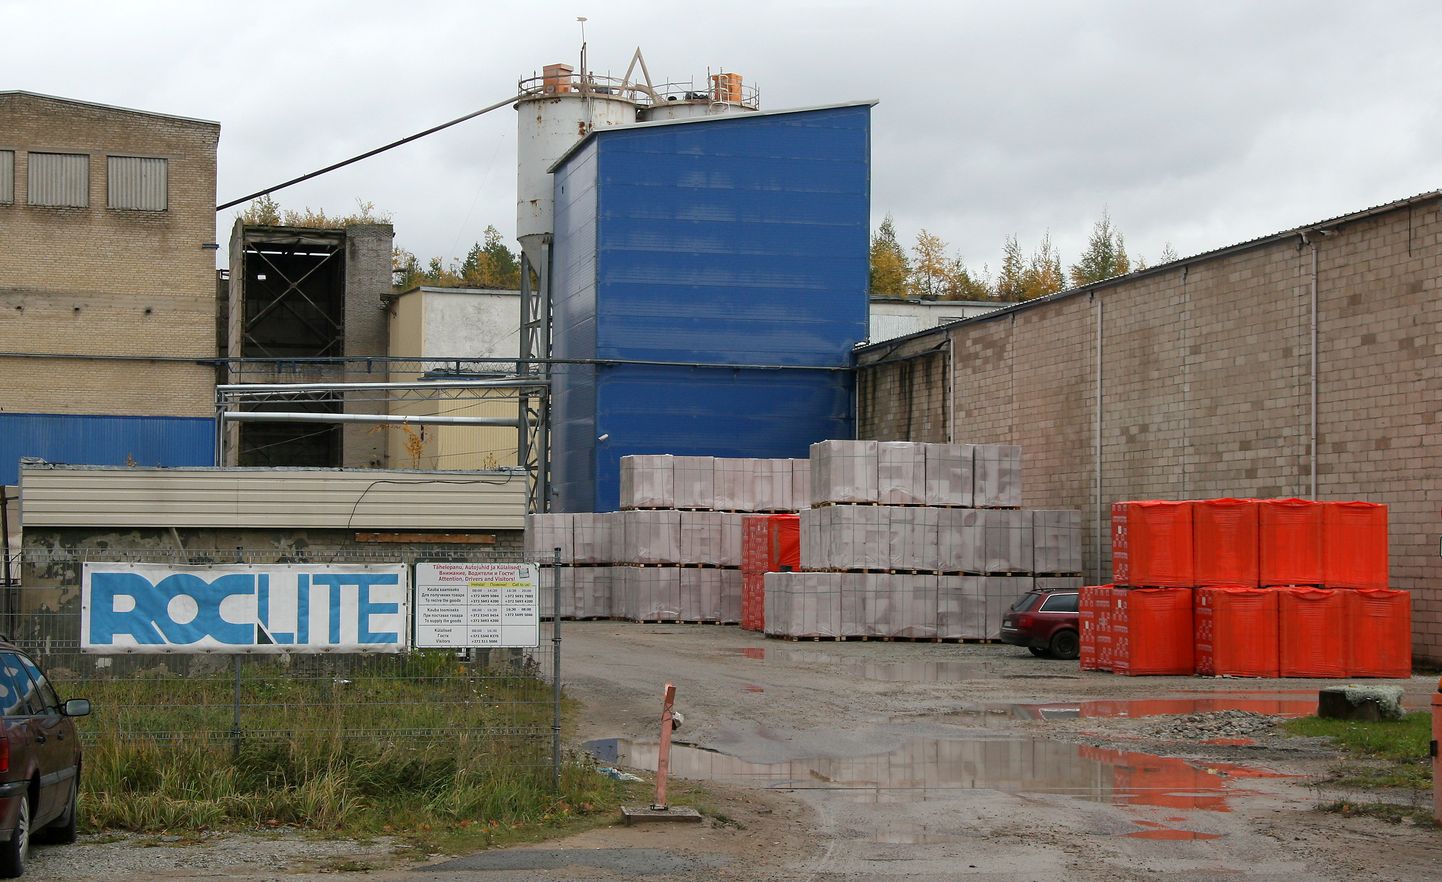 Производство блоков "Bauroc" поработает в Ахтме еще до конца нынешнего года, а потом закроется.